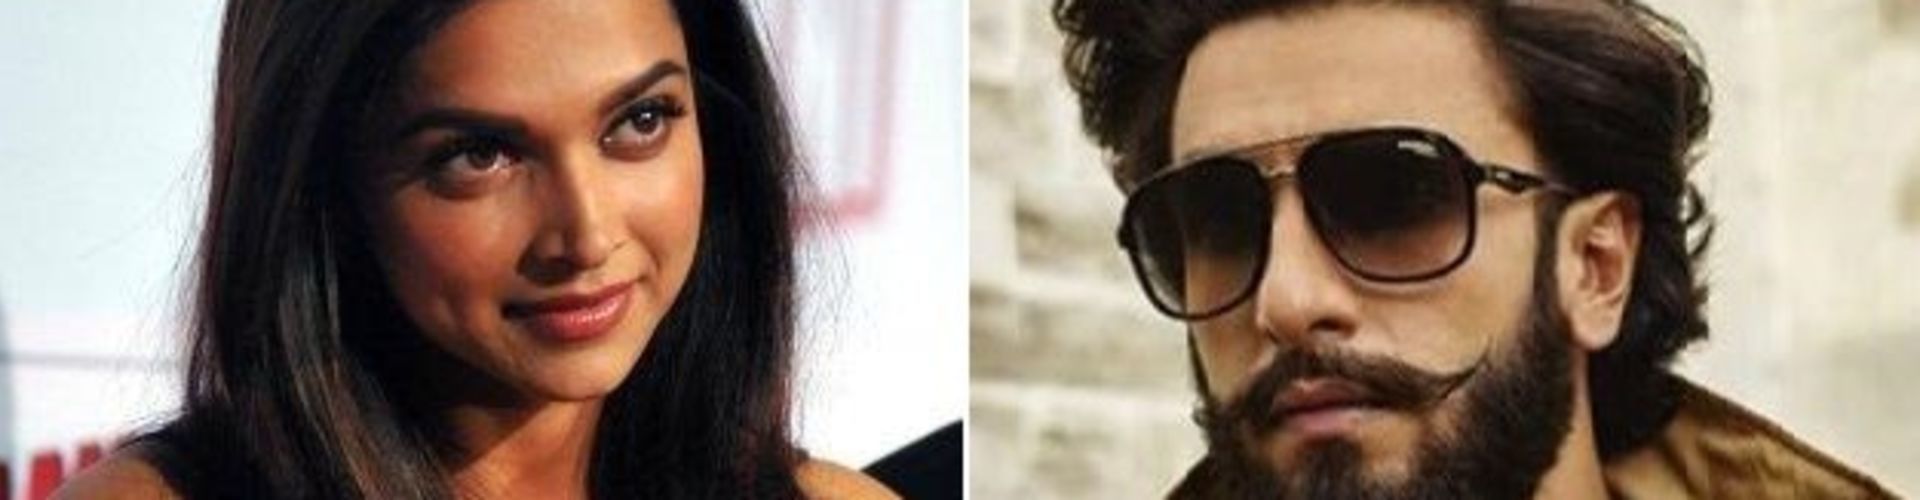 दीपिका पादुकोण और रणवीर सिंह का “मी टू” मूवमेंट पर बड़ा बयान